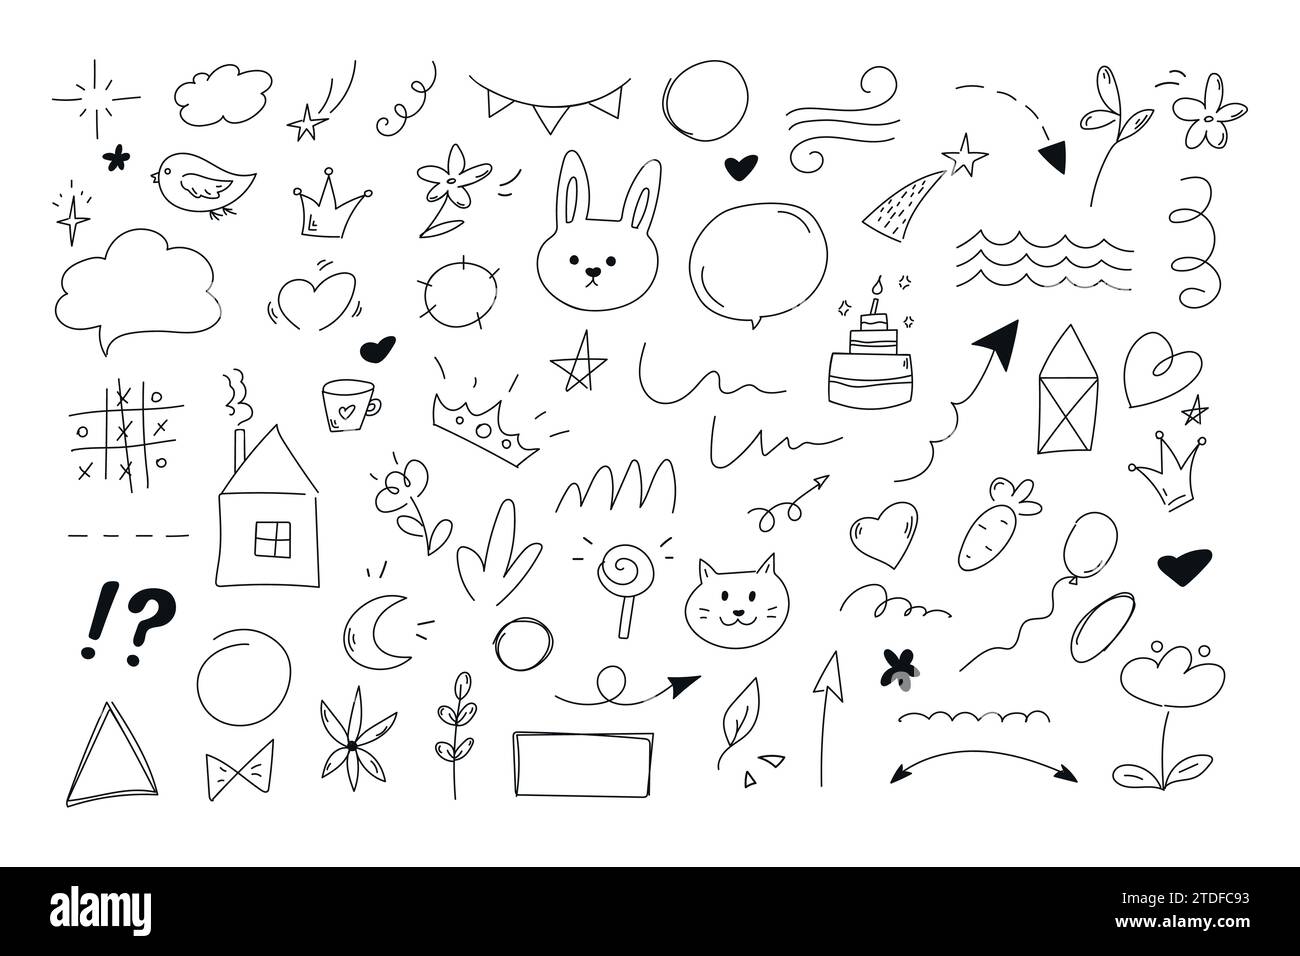 Kindliche Doodle-Sammlung von handgezeichneten Tieren, Pfeilen, Sternen, Herzen, geometrischen Formen, Kronen, Blumen, Linien und Formen. Vektorabbildung Stock Vektor